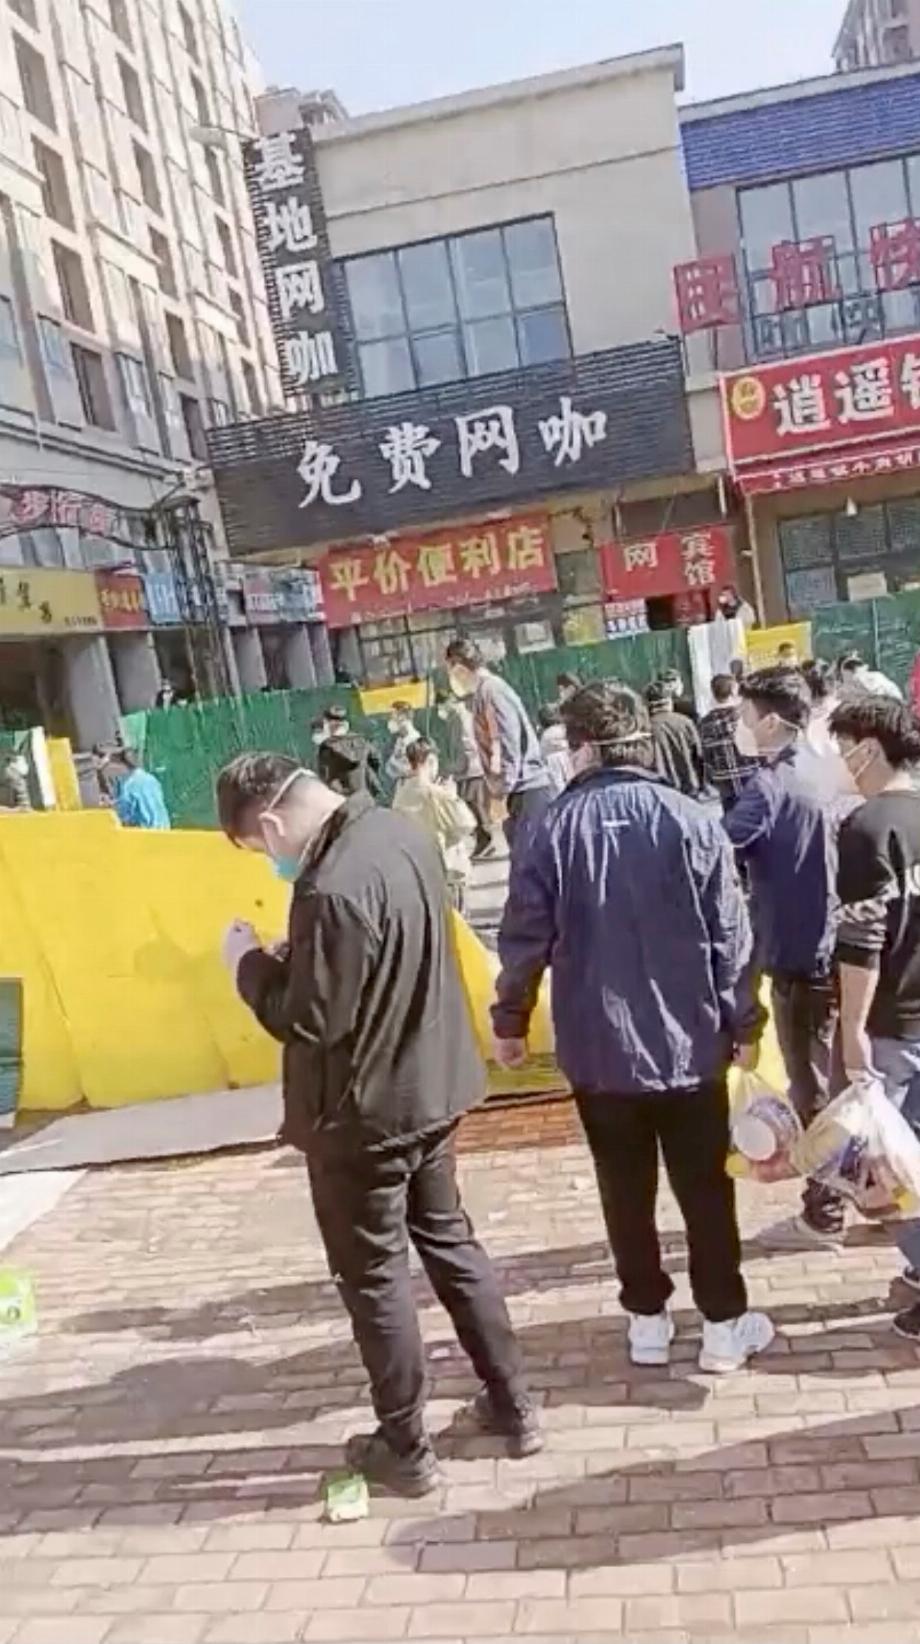 Un groupe de personnes traverse une clôture abaissée à la suite d'une manifestation à l'usine de Foxconn à Zhengzhou, en Chine, dans cette capture d'écran obtenue à partir d'une vidéo publiée le 23 novembre 2022. Vidéo obtenue par Reuters/via REUTERS CETTE IMAGE A ÉTÉ FOURNIE PAR UN TIERS. NE PAS RÉSOUDRE. NE PAS ARCHIVER